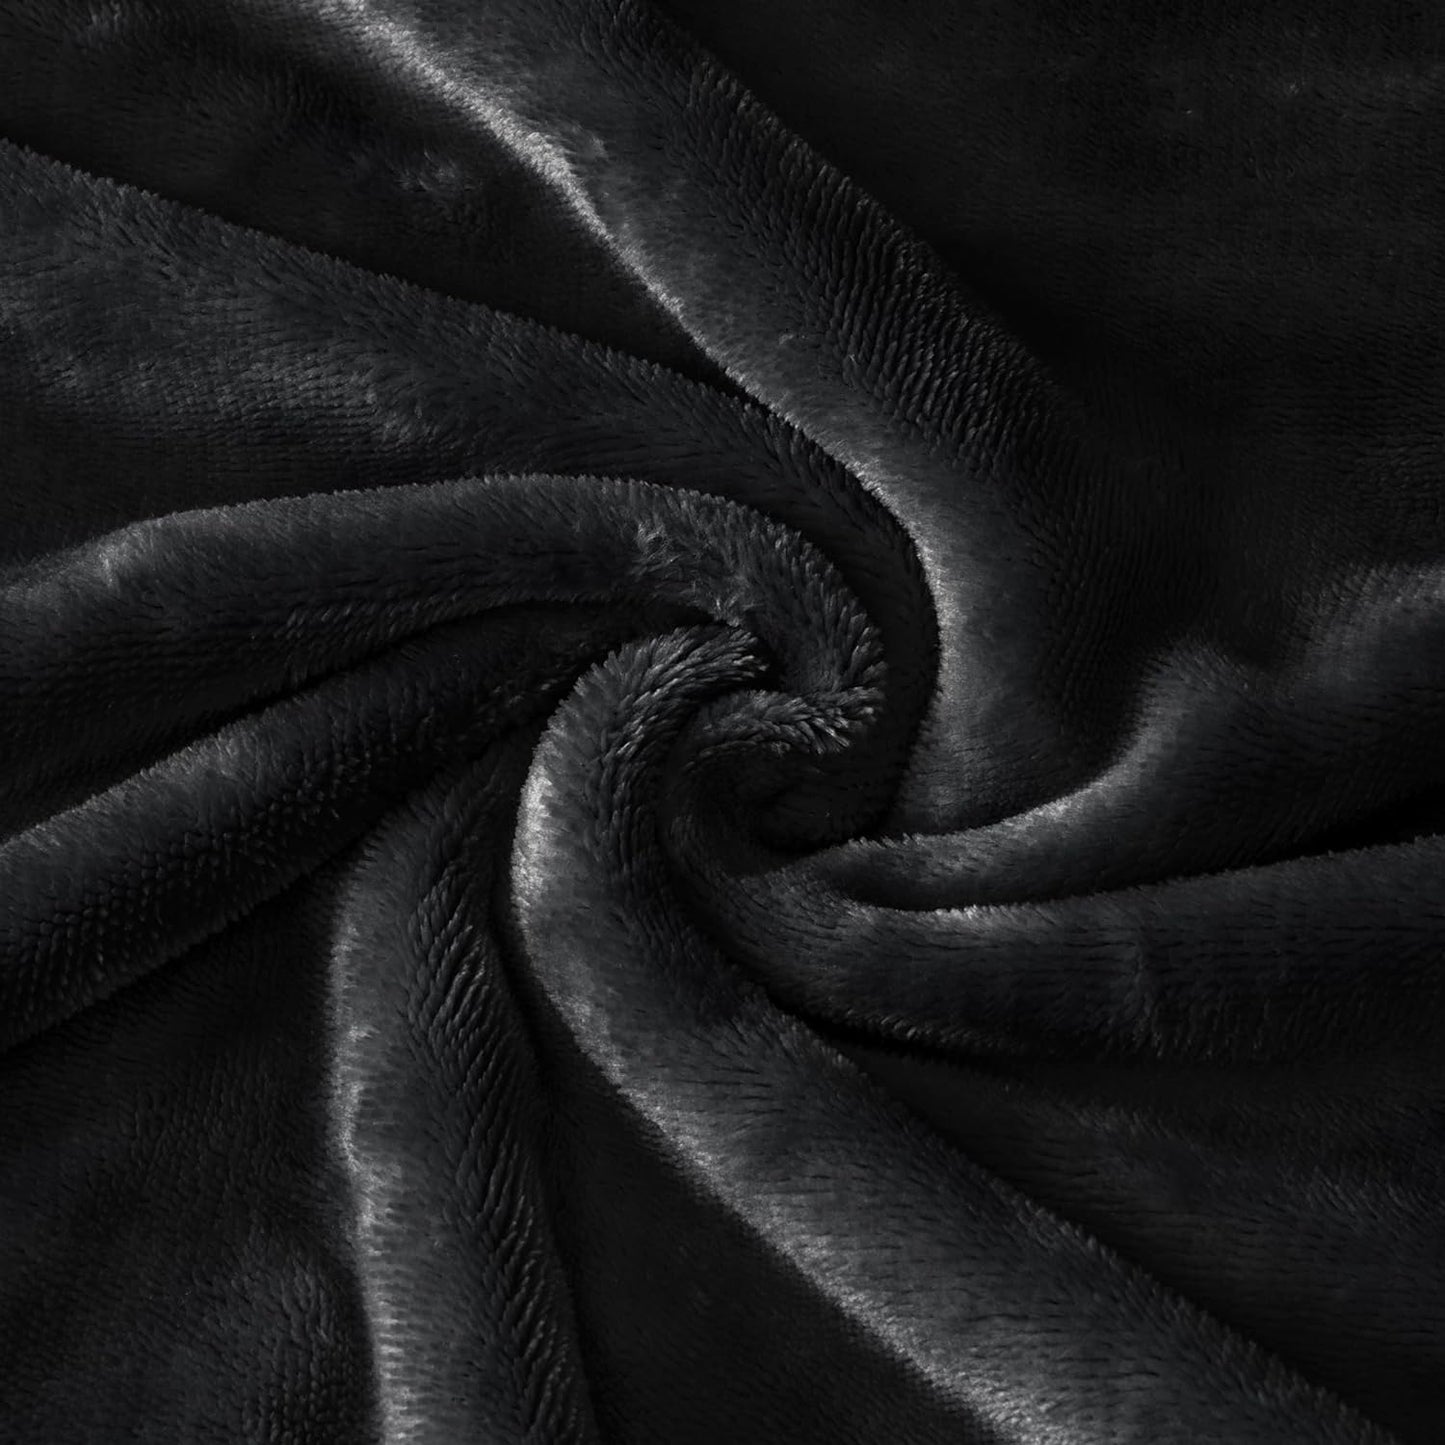 Black Fleece Body Pillow